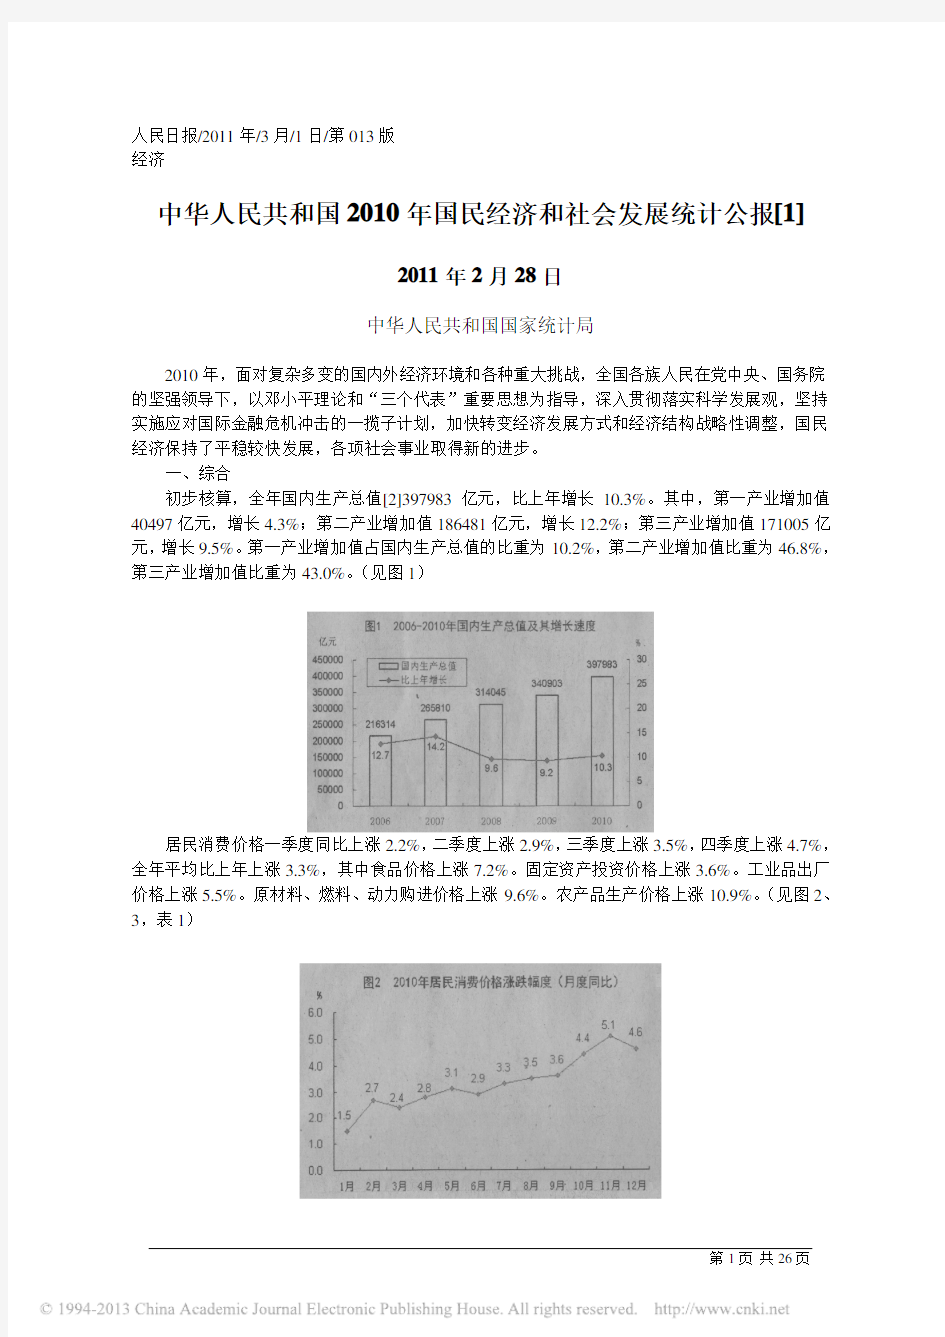 中华人民共和国2010年国民经济和社会发展统计公报_1_中华人民共和国国家统计局